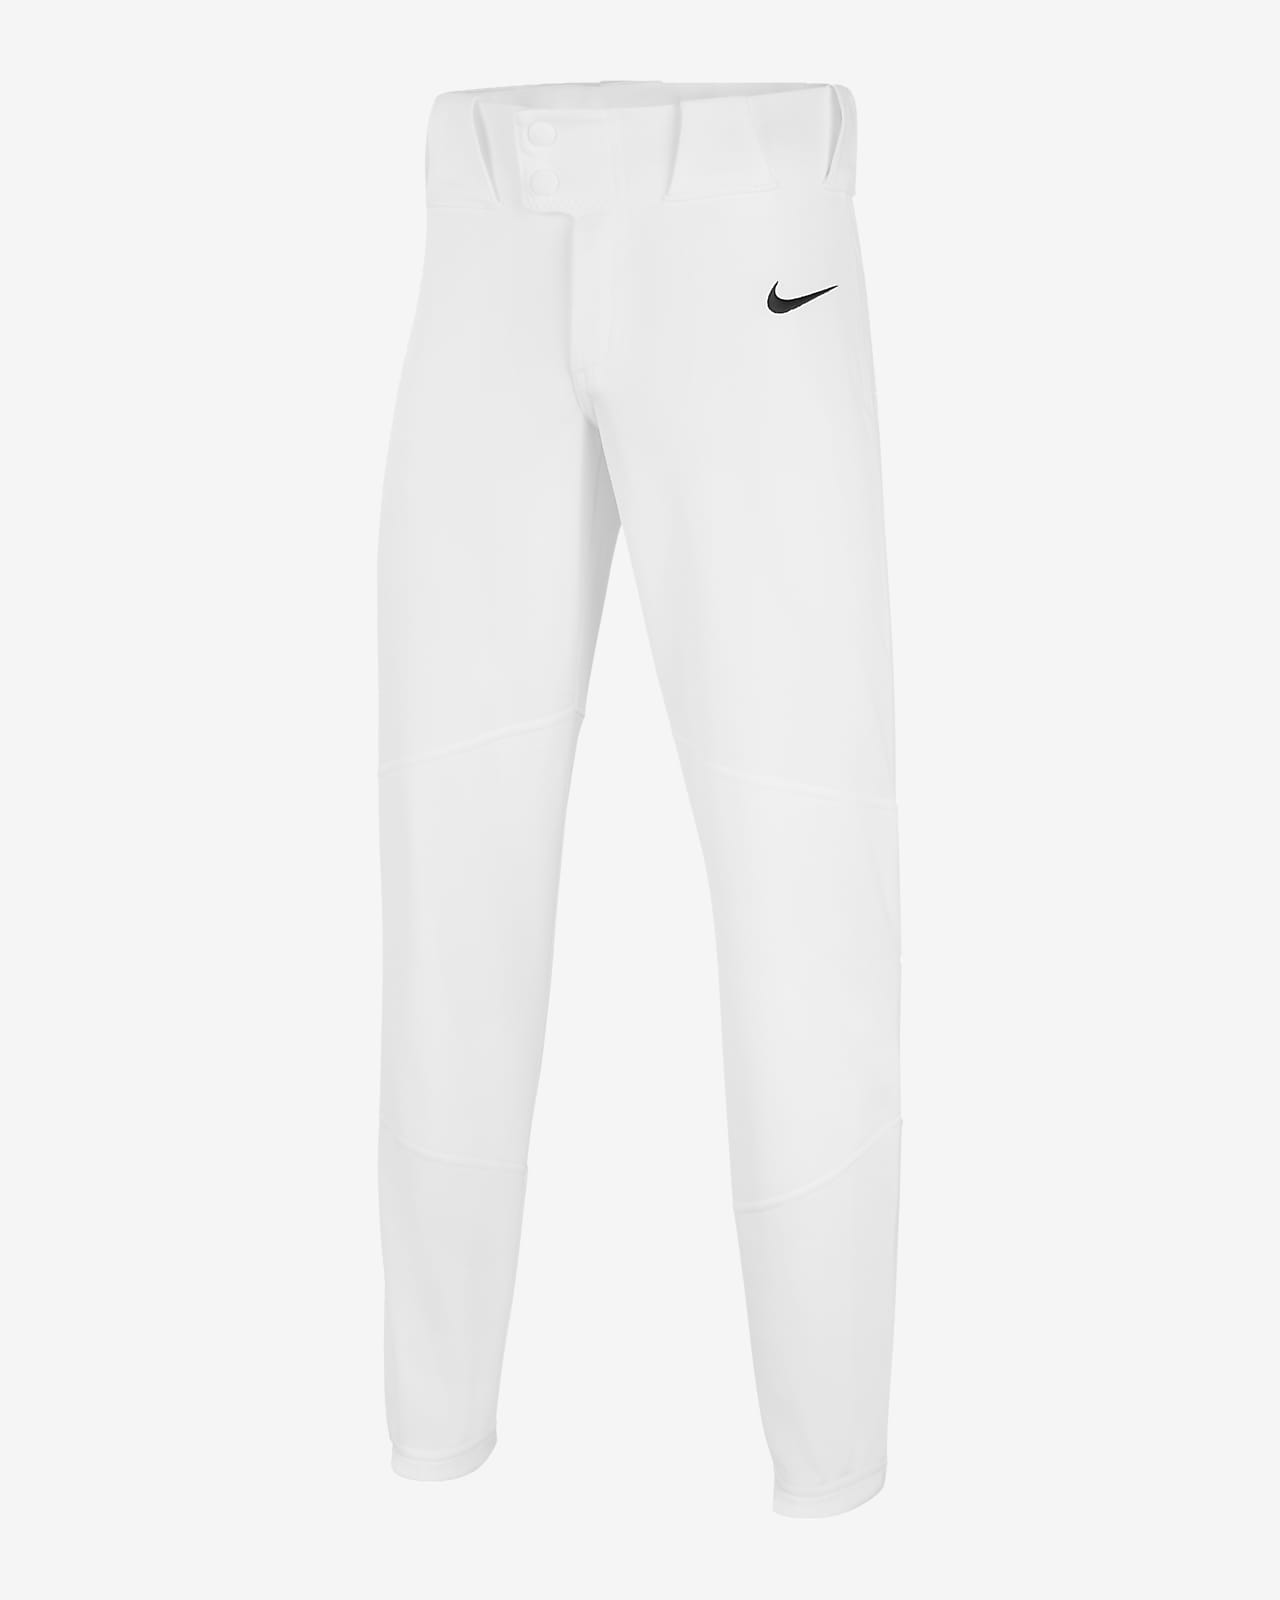 Pantalones de béisbol elastizados para niño talla grande Nike Vapor